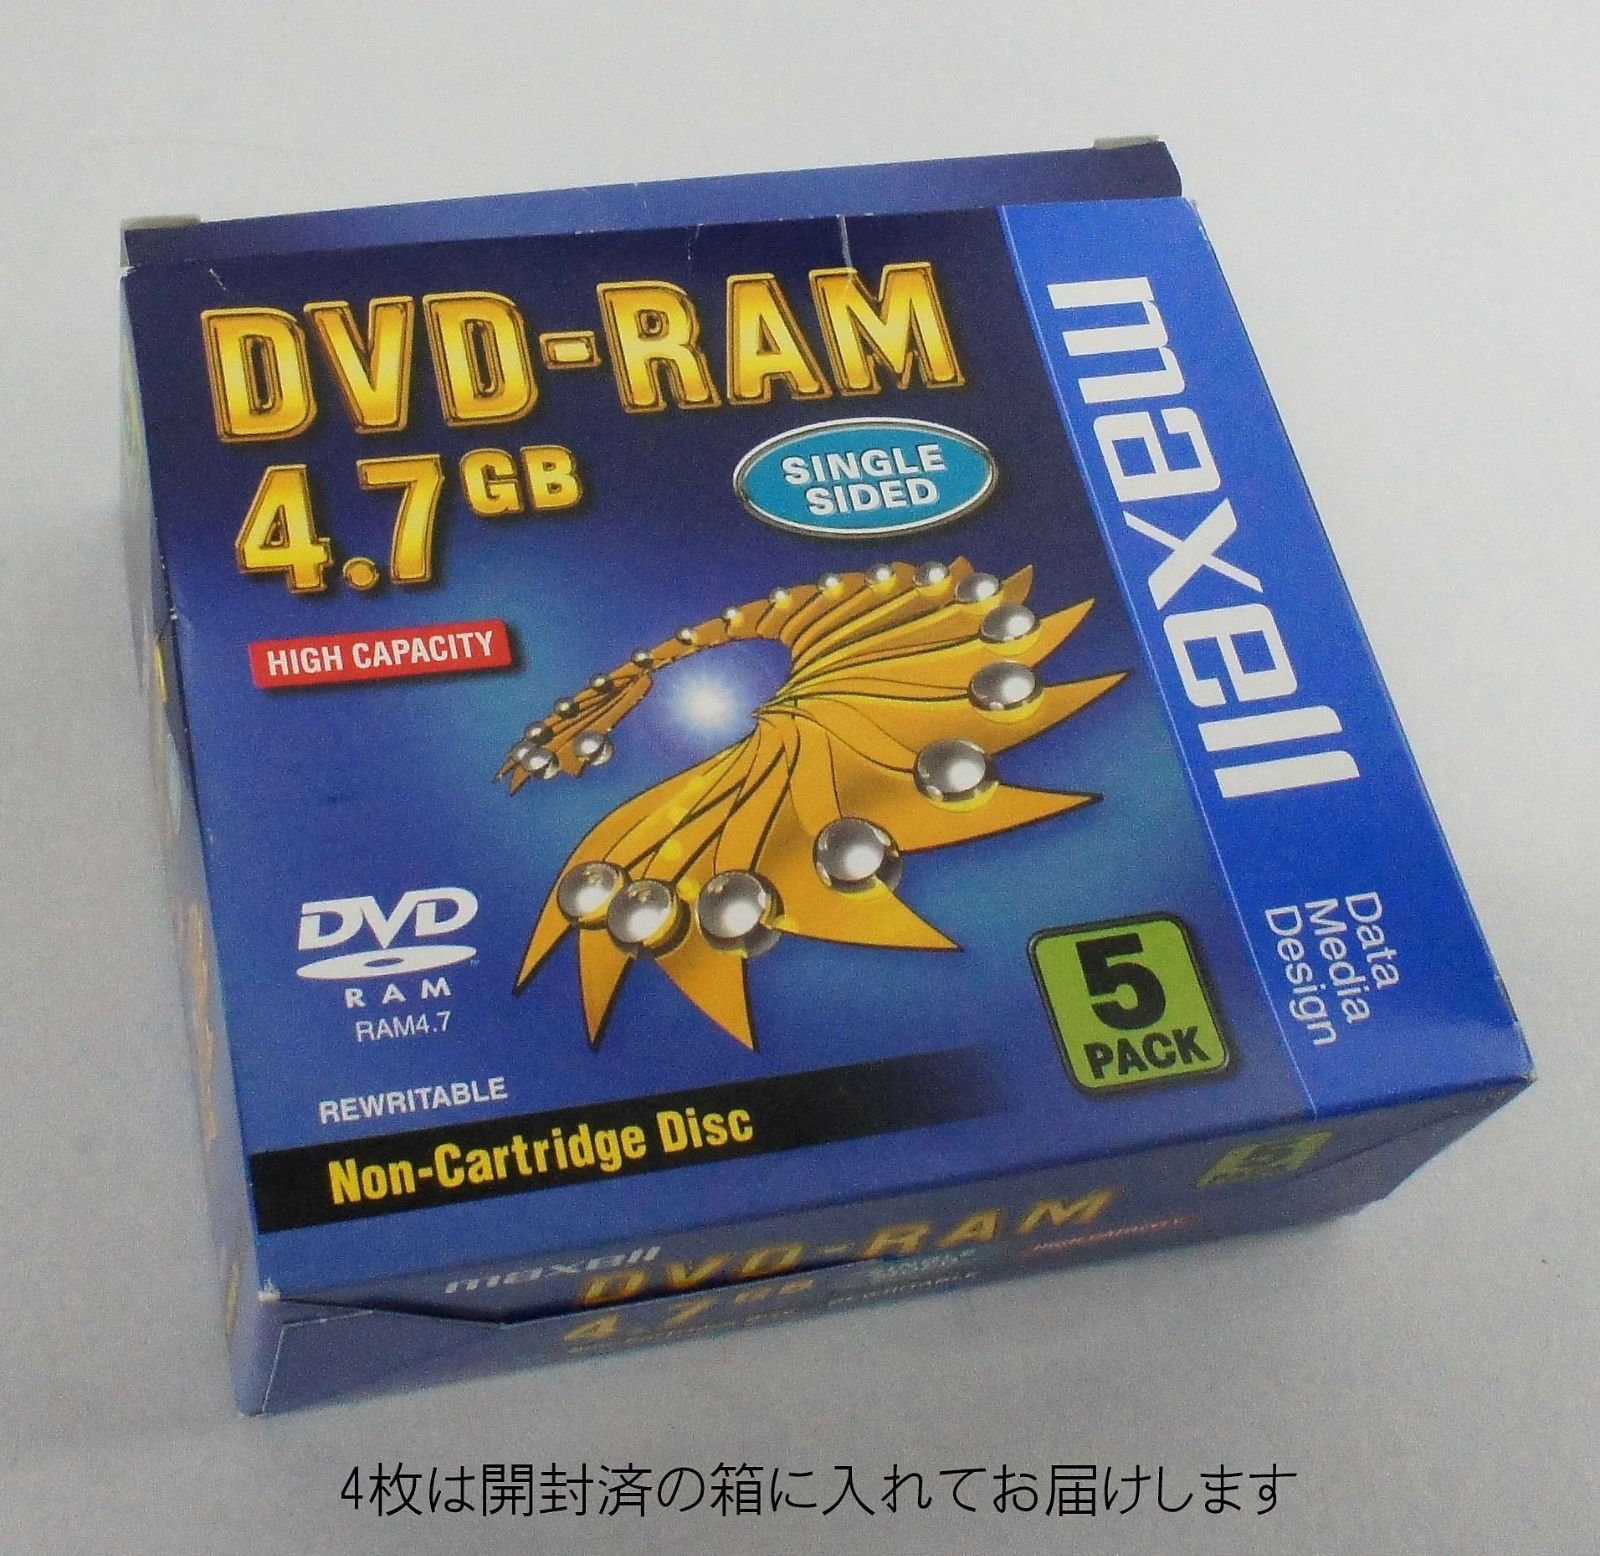 19枚セット SONY maxell DVD-RAM 4.7GB DVD データ メディア ソニー マクセル PC M-R071801 - メルカリ